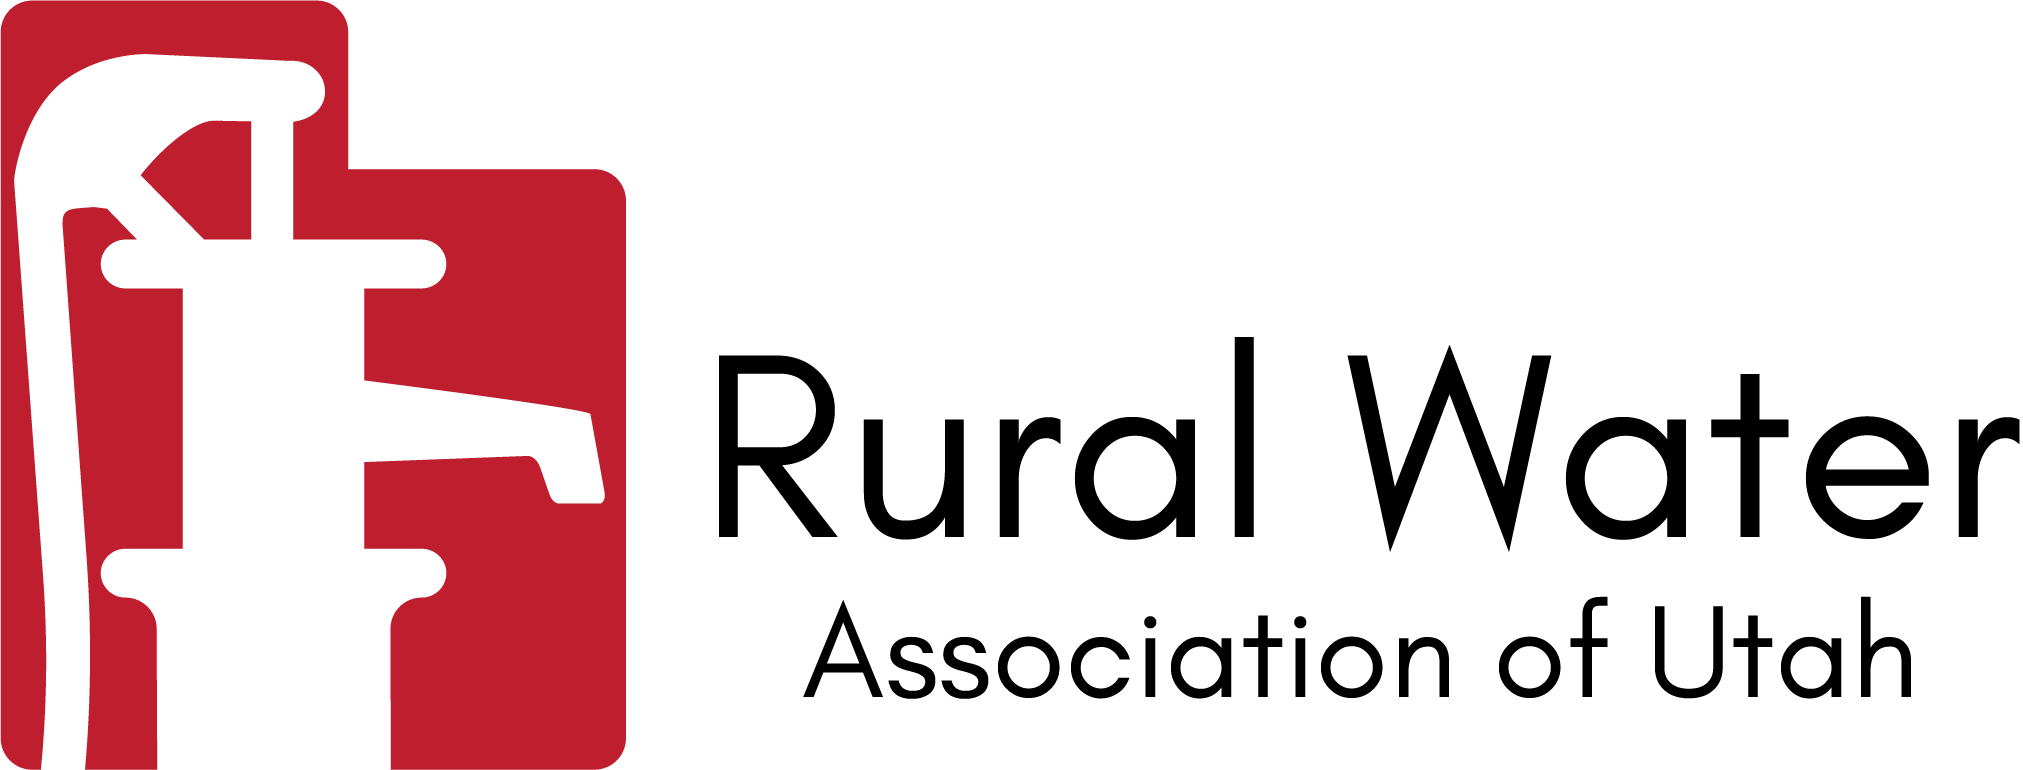 Utah Rural Water Conference